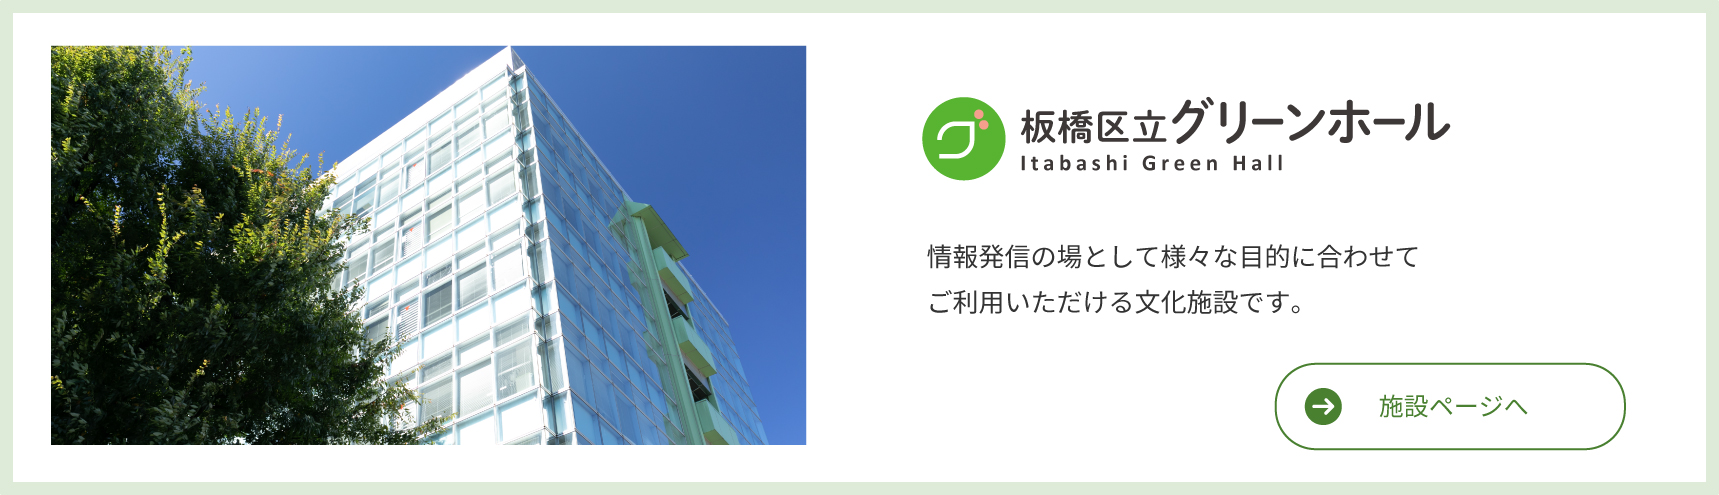 Itabashi Ward Green Hall Bilgi yaymak için bir yer olarak çeşitli amaçlar için kullanılabilecek bir kültür tesisi.